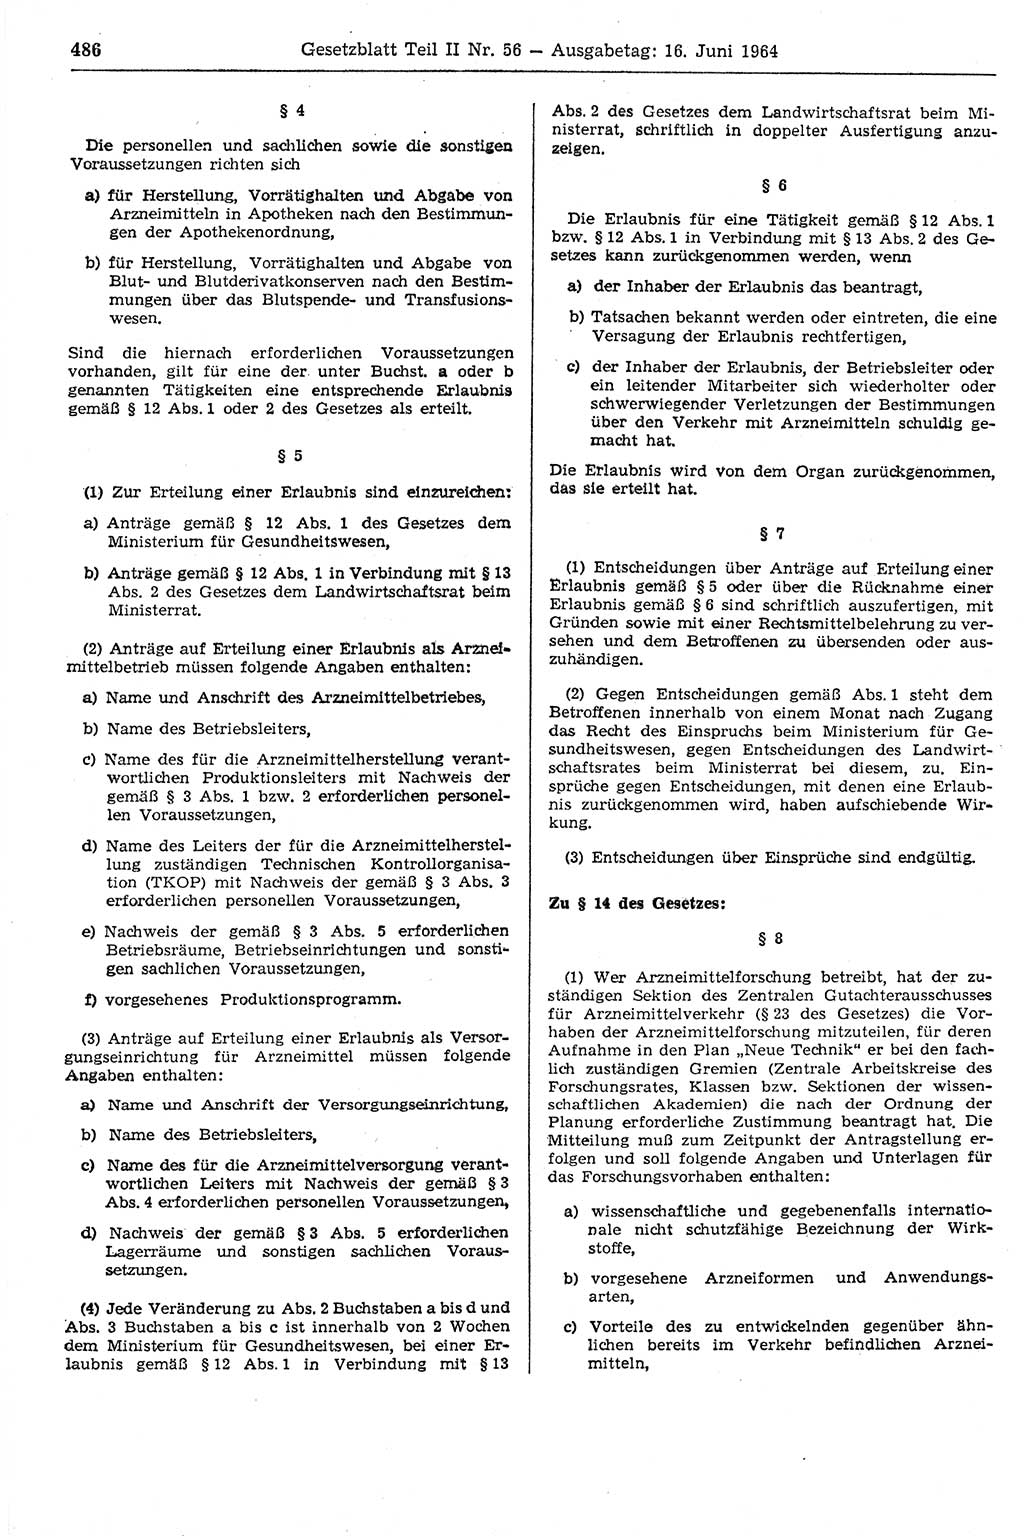 Gesetzblatt (GBl.) der Deutschen Demokratischen Republik (DDR) Teil ⅠⅠ 1964, Seite 486 (GBl. DDR ⅠⅠ 1964, S. 486)